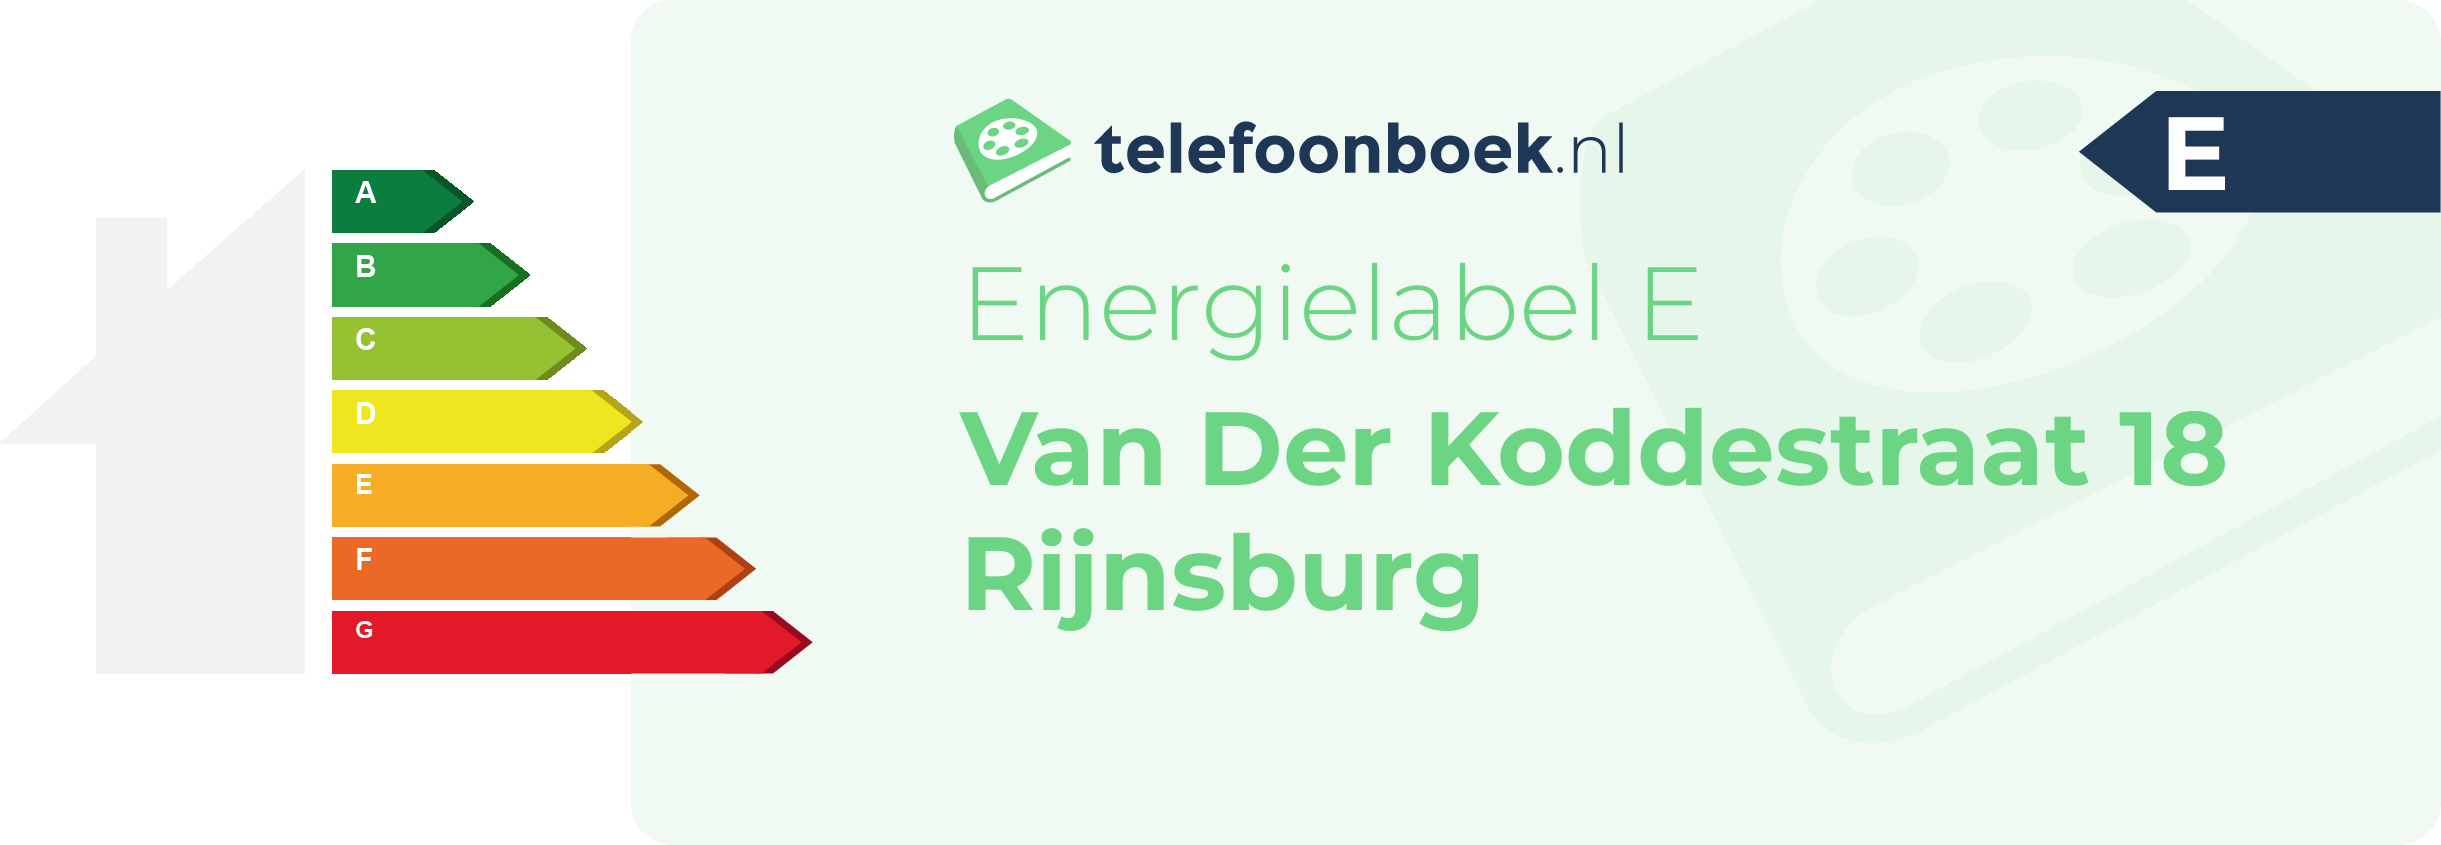 Energielabel Van Der Koddestraat 18 Rijnsburg